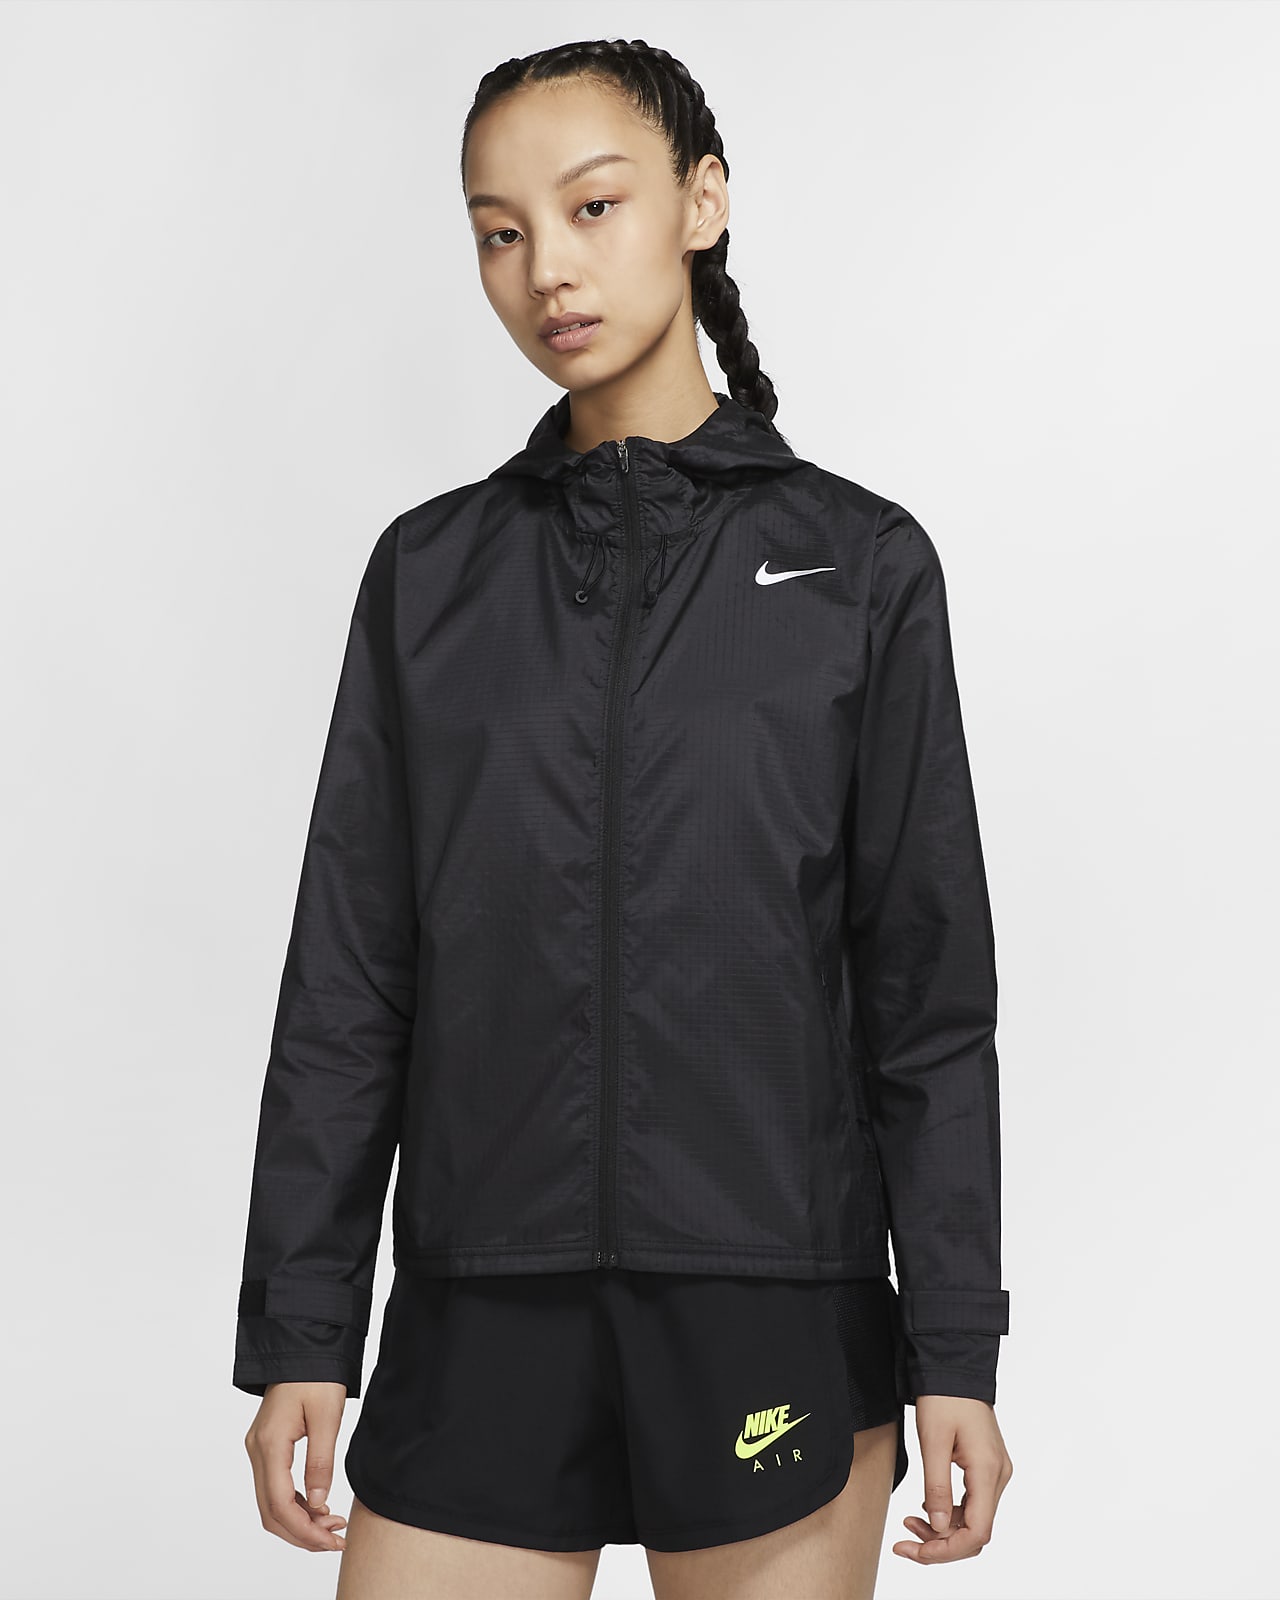 Embajada Regan llamar Nike Essential Women's Running Jacket. Nike JP